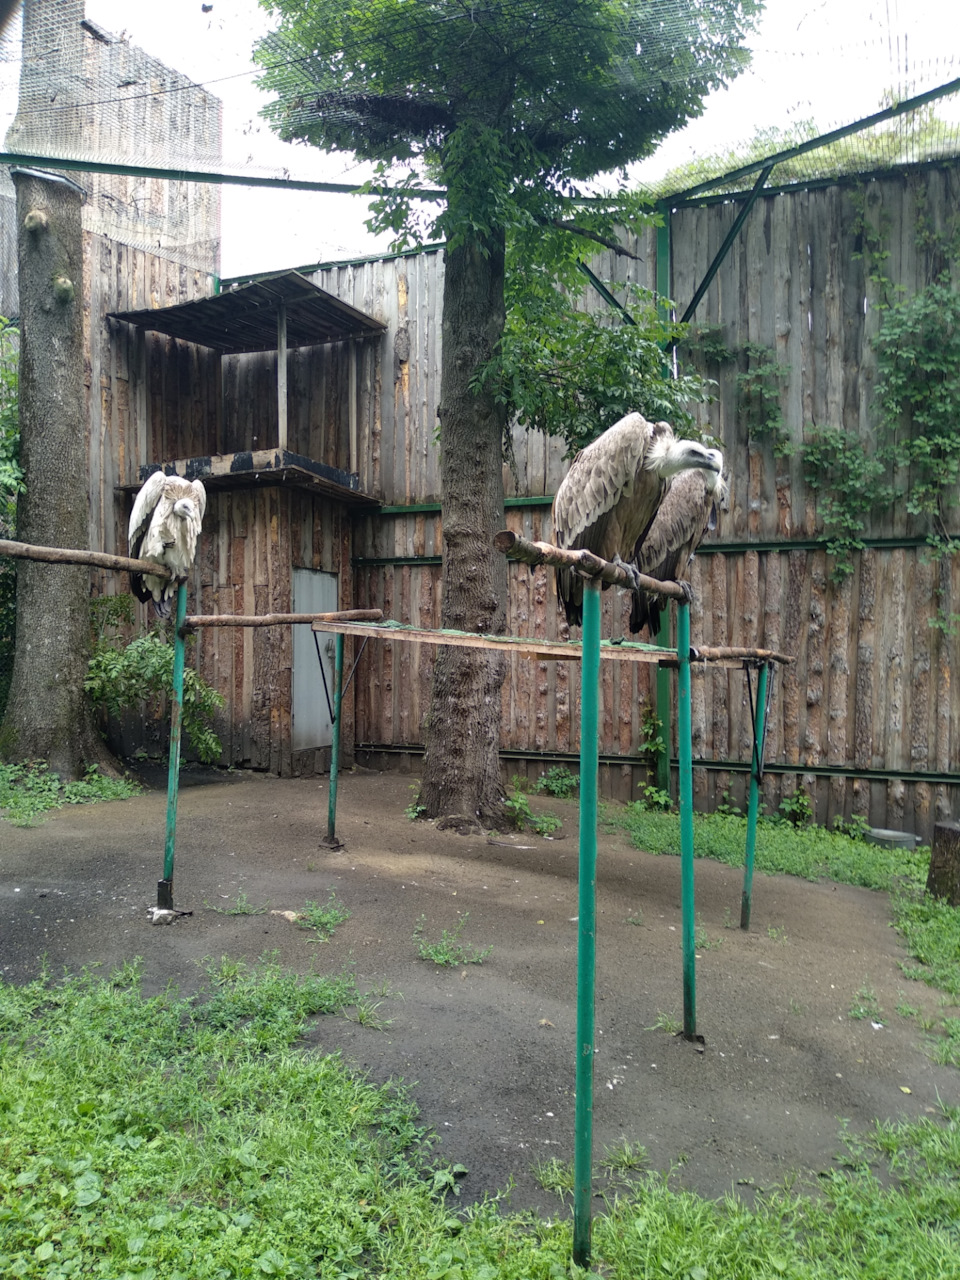 Зоопарк Магазин Самара Официальный